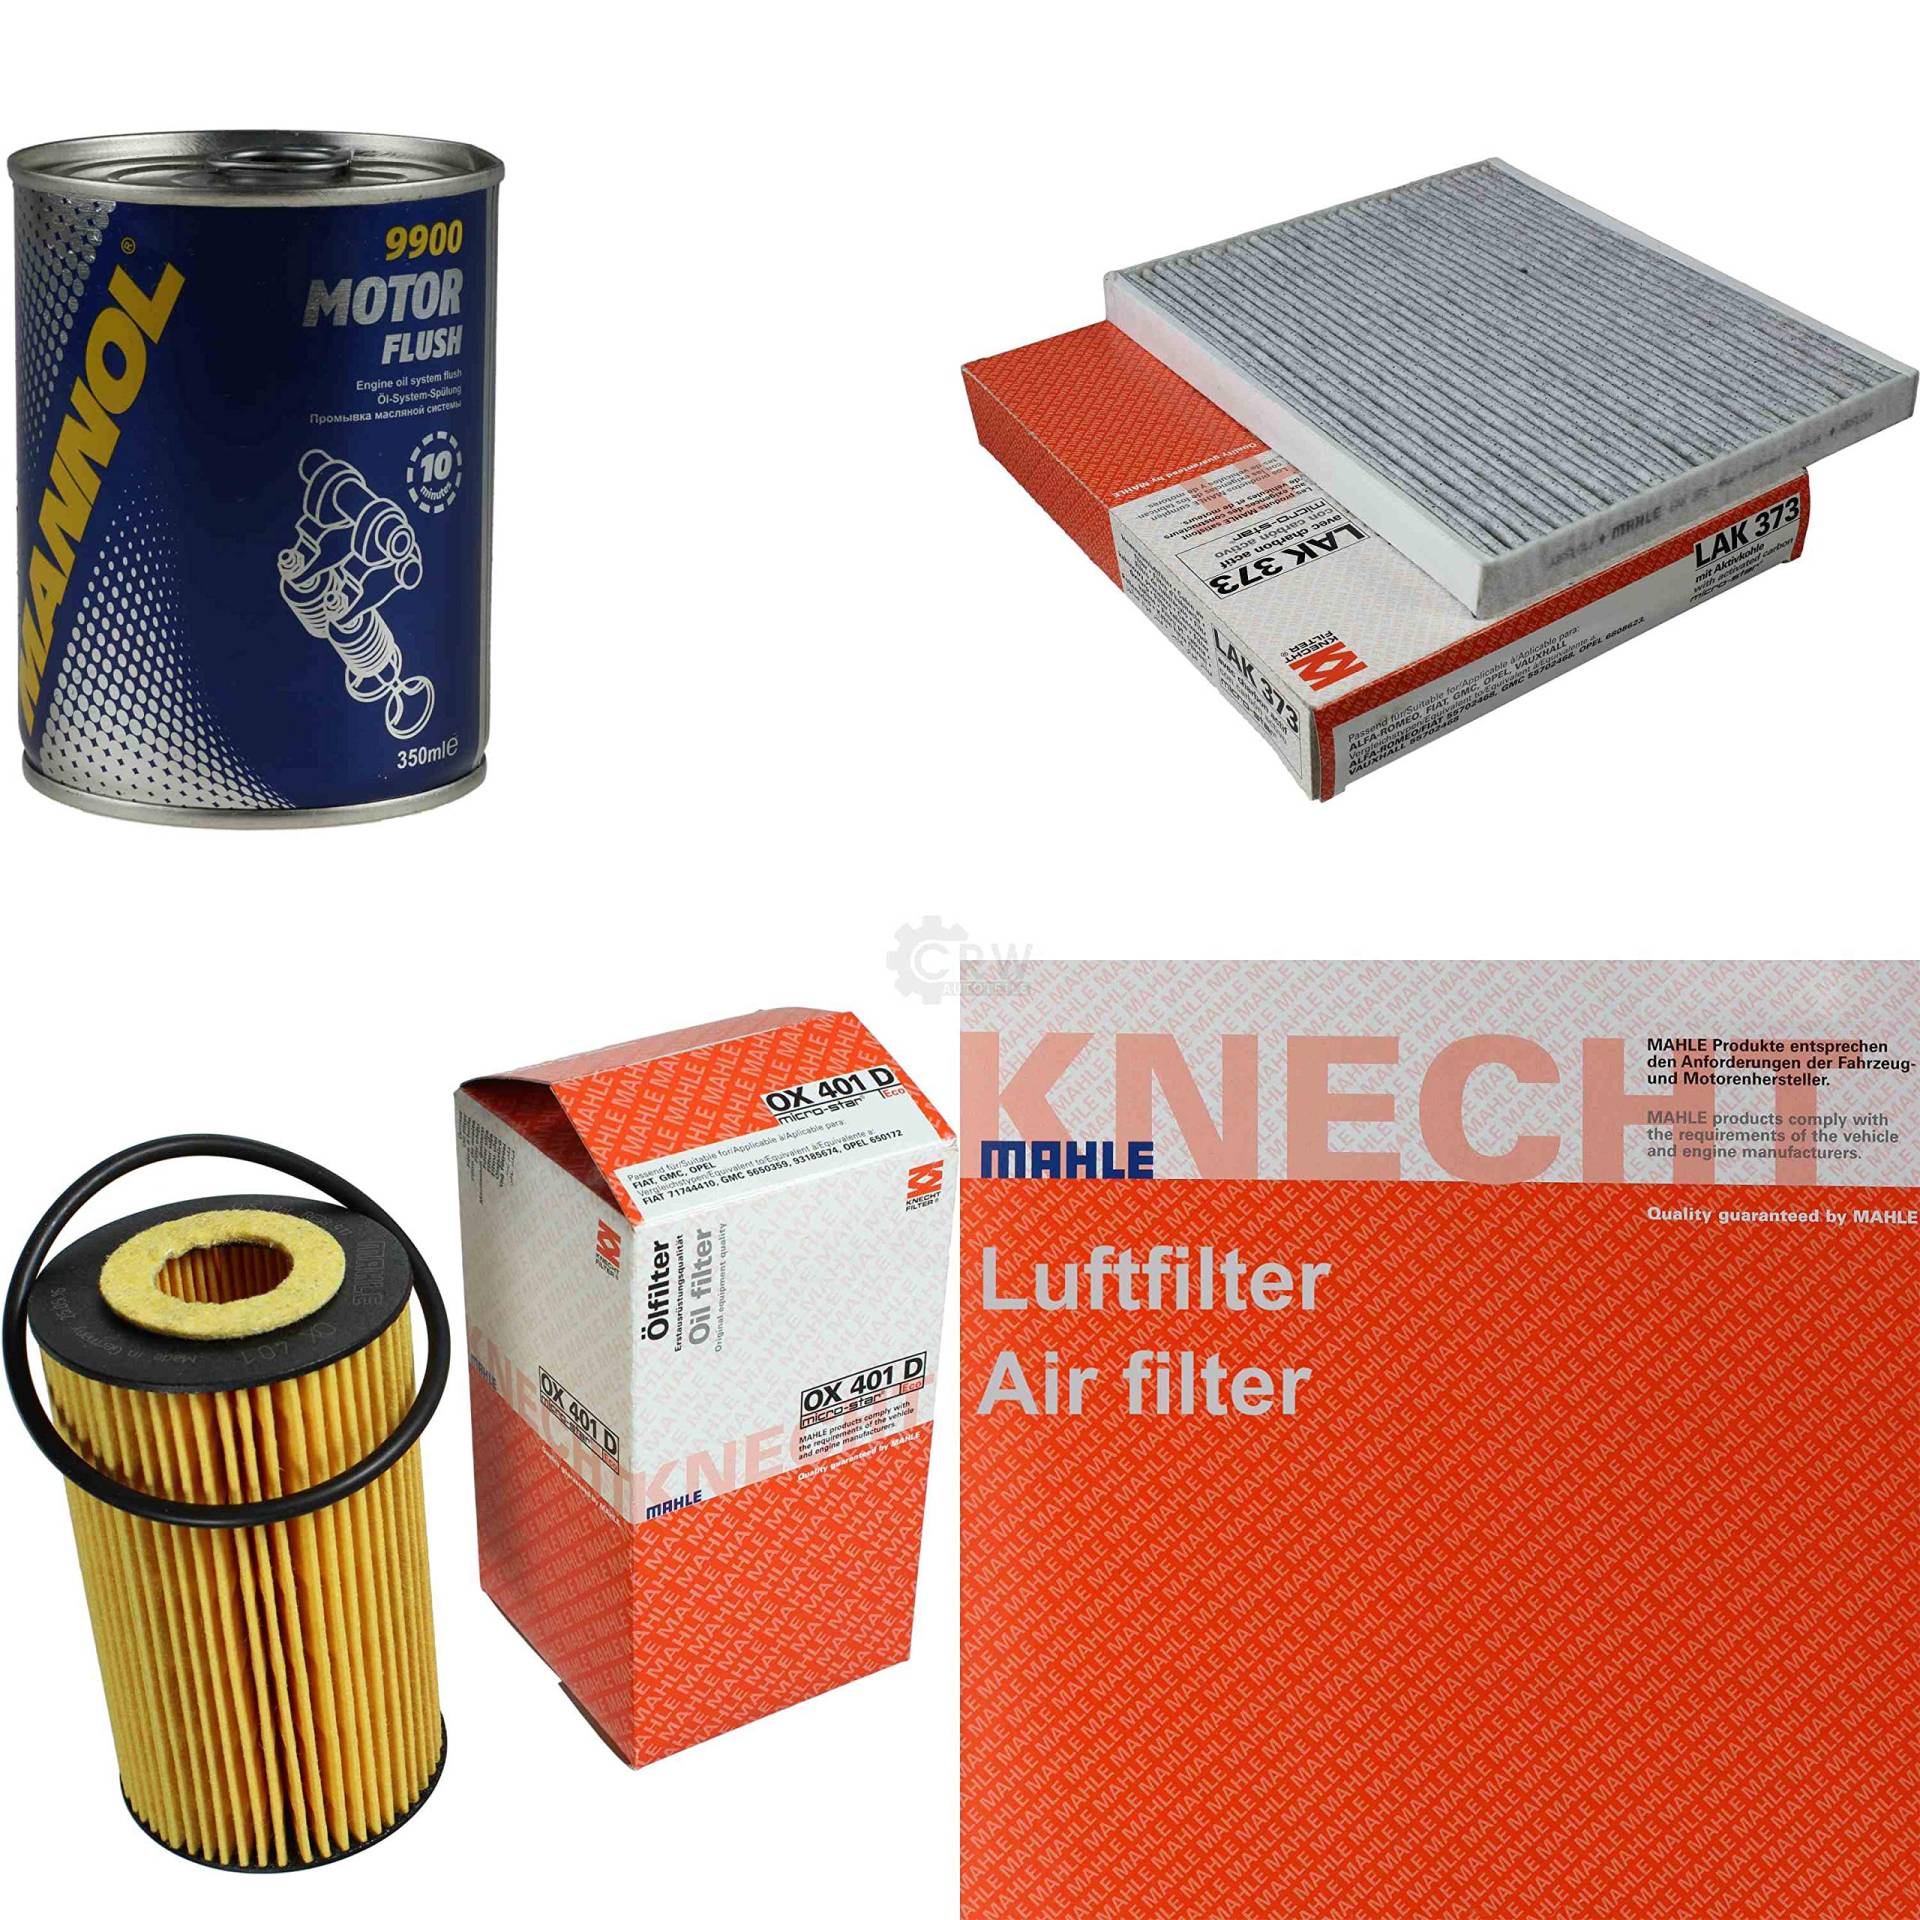 MAHLE/KNECHT Inspektionspaket Filter Set SCT Motor Flush Motorspülung 11606101 von Diederichs